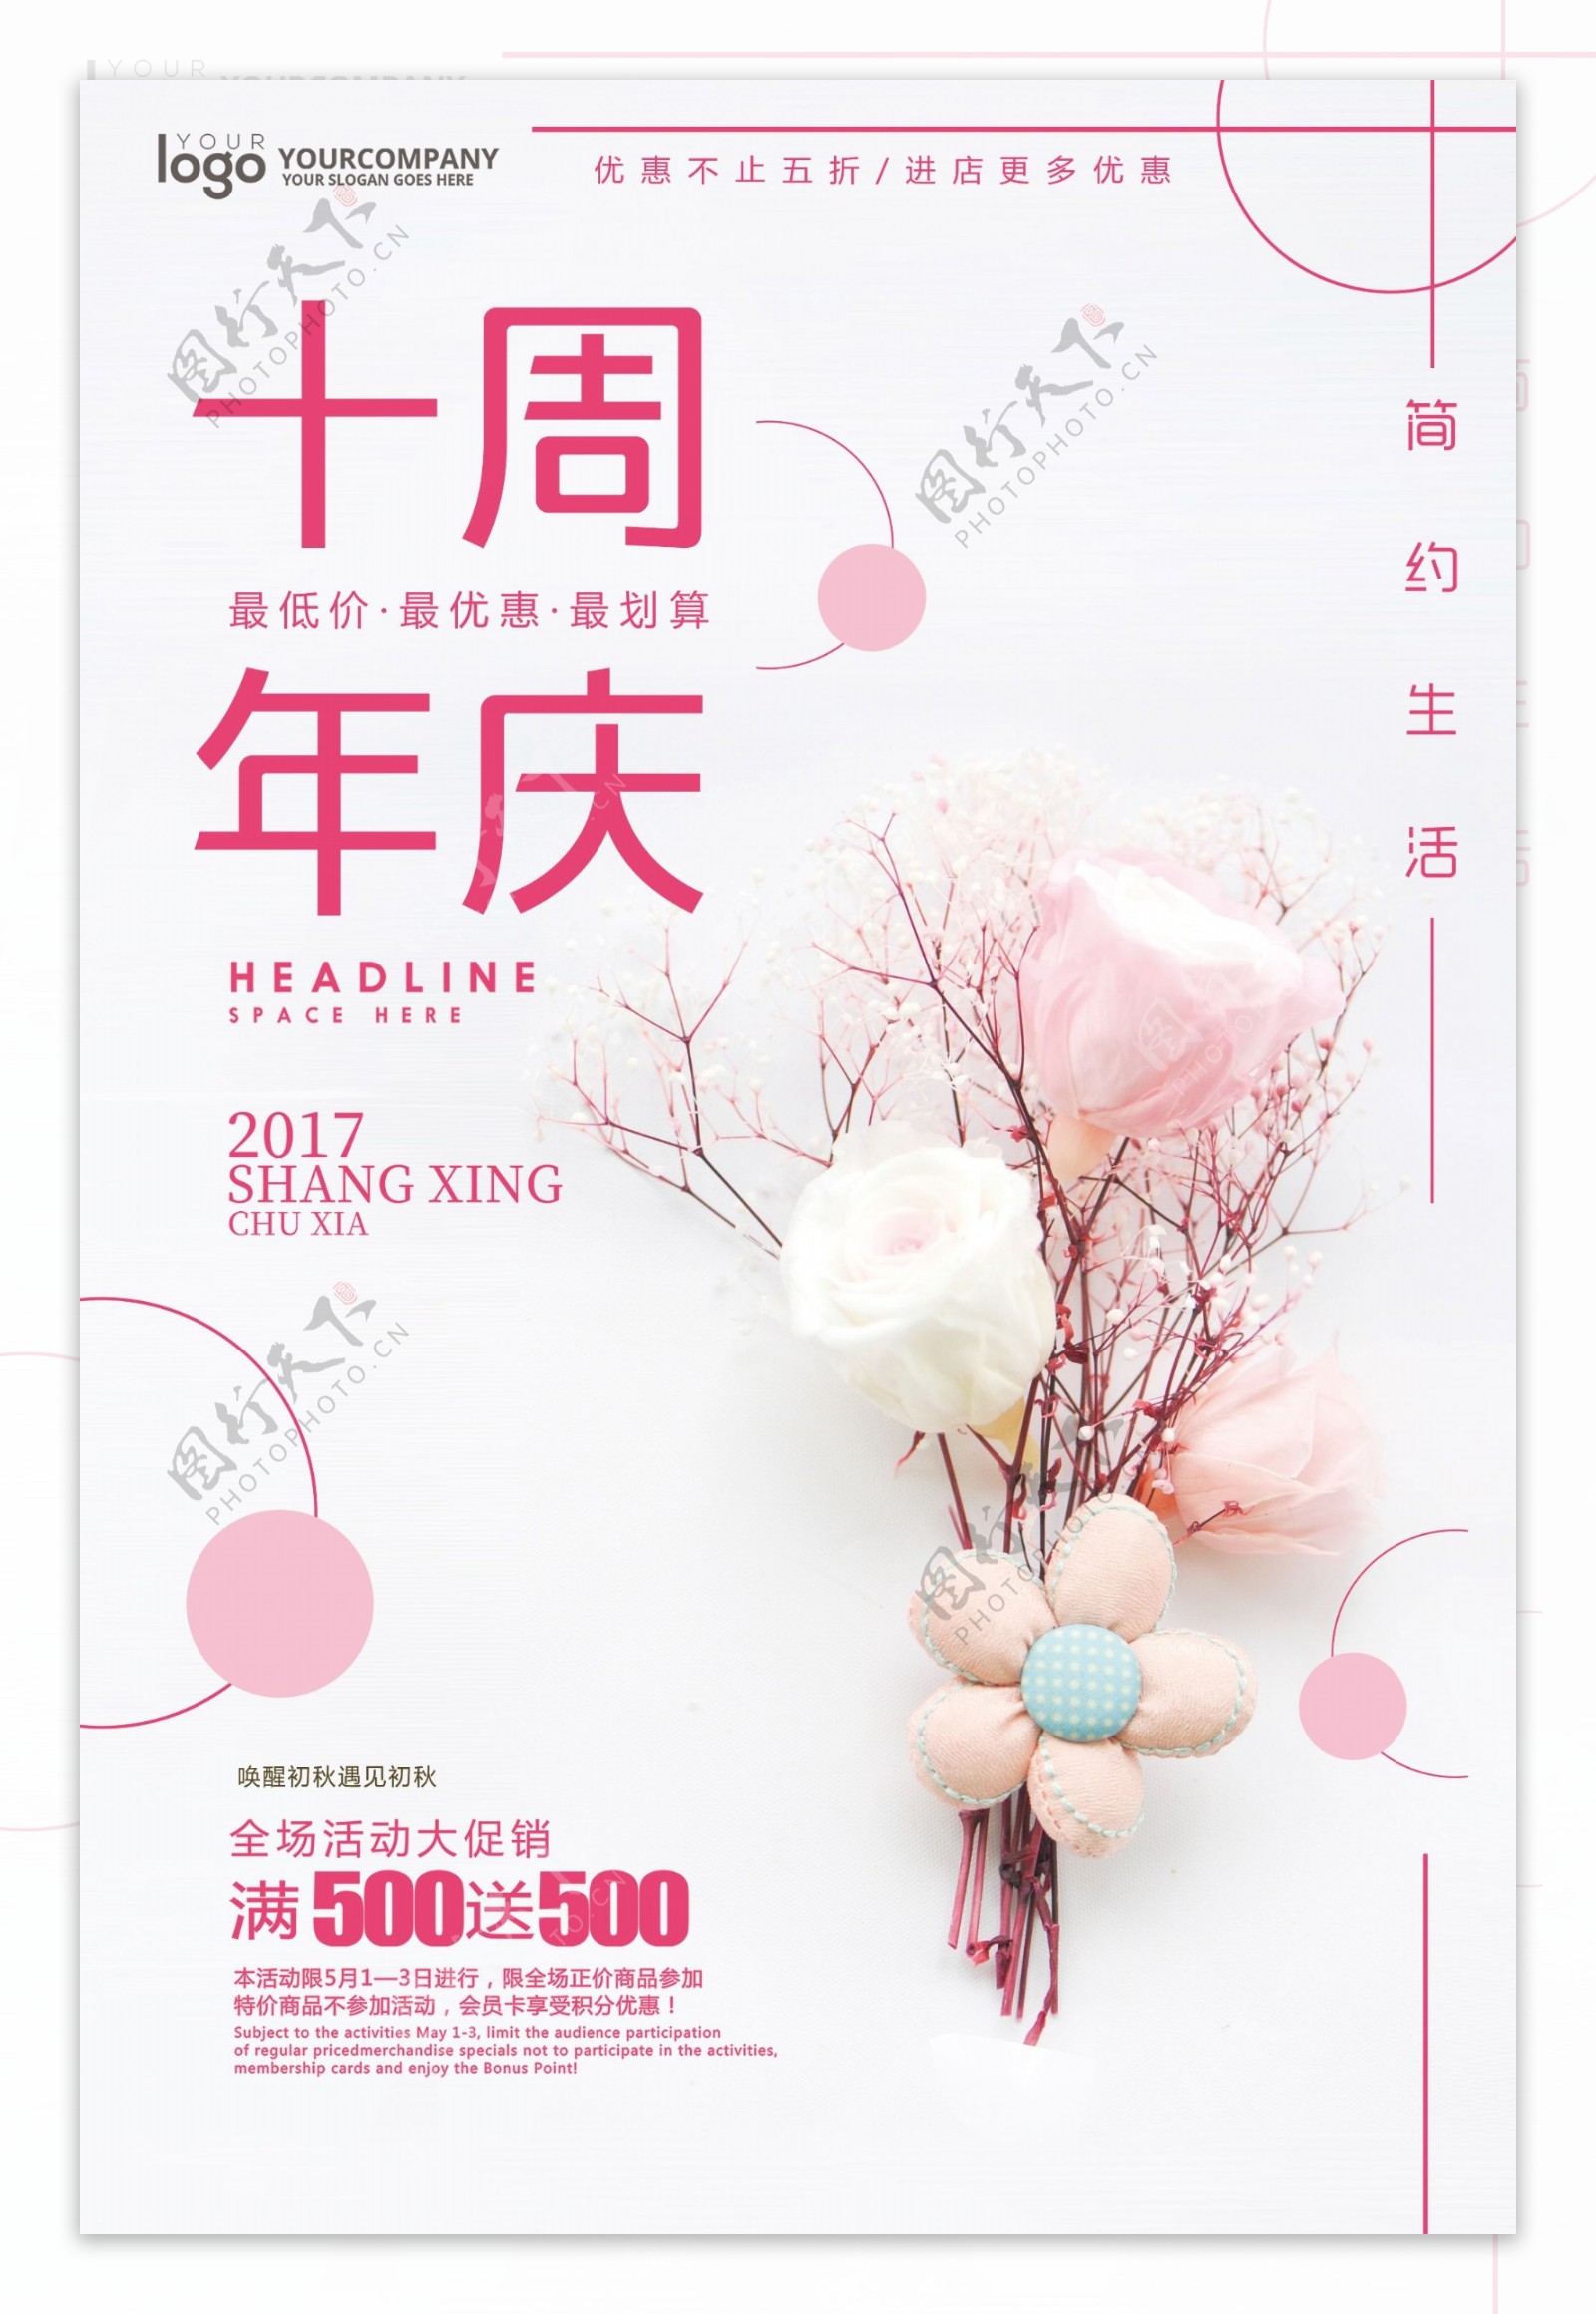 清新时尚十周年庆商场促销海报